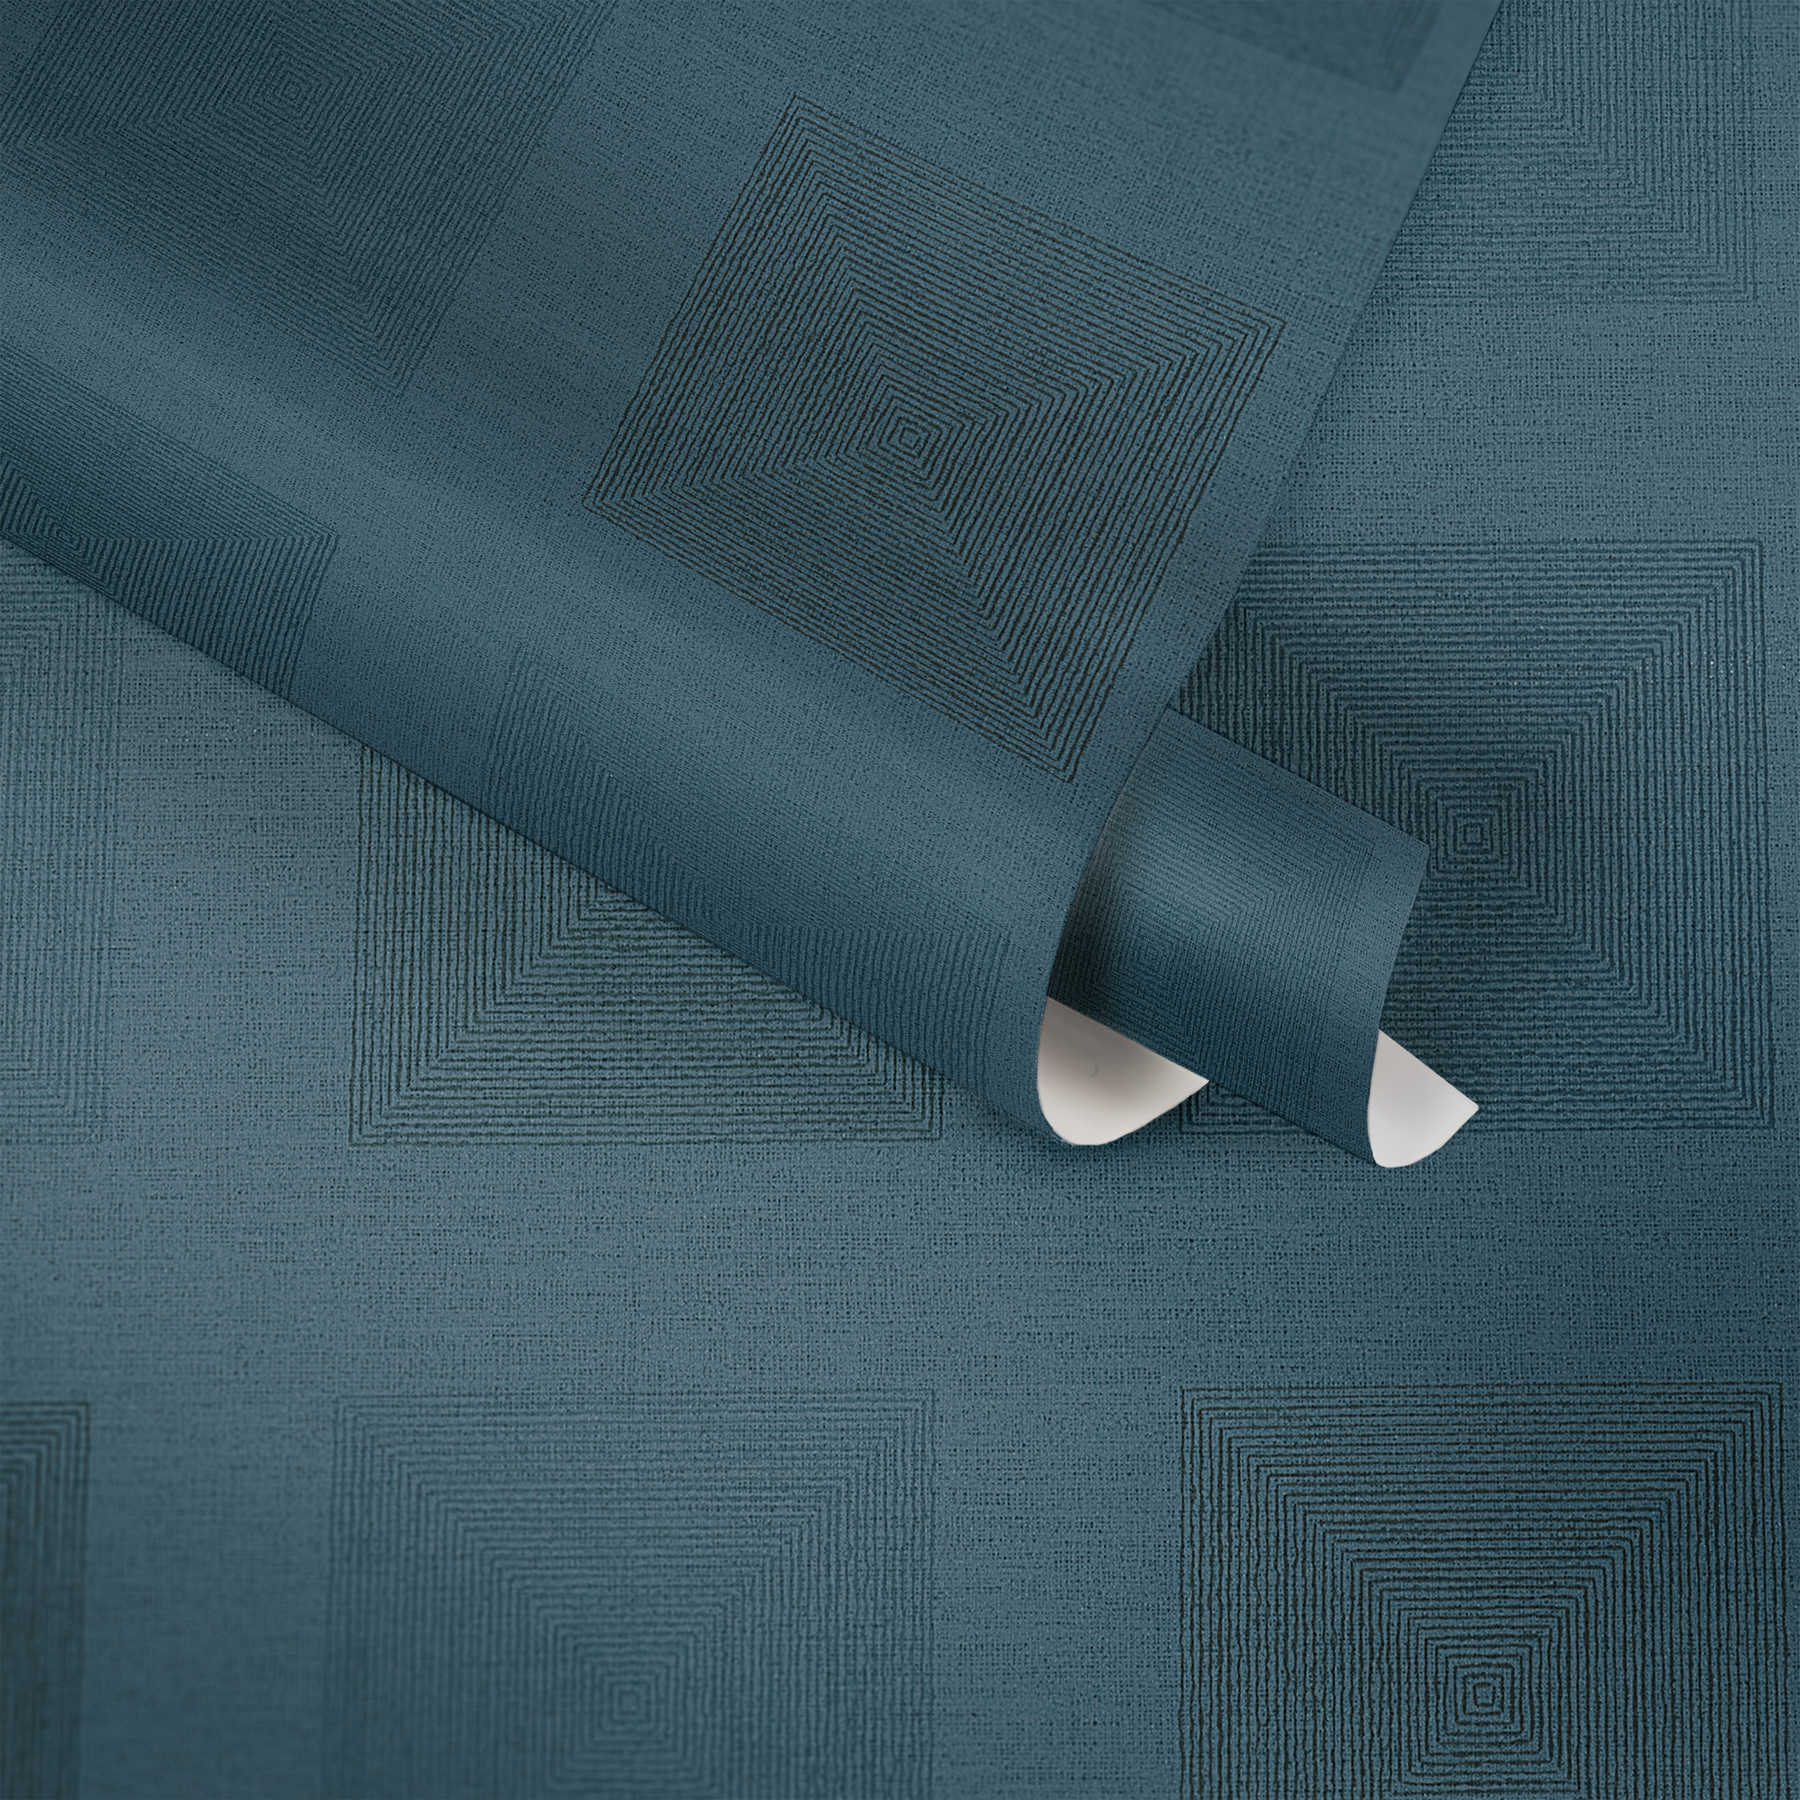             Afrikaans Behang Grafisch Patroon met Metaaleffect - Blauw
        